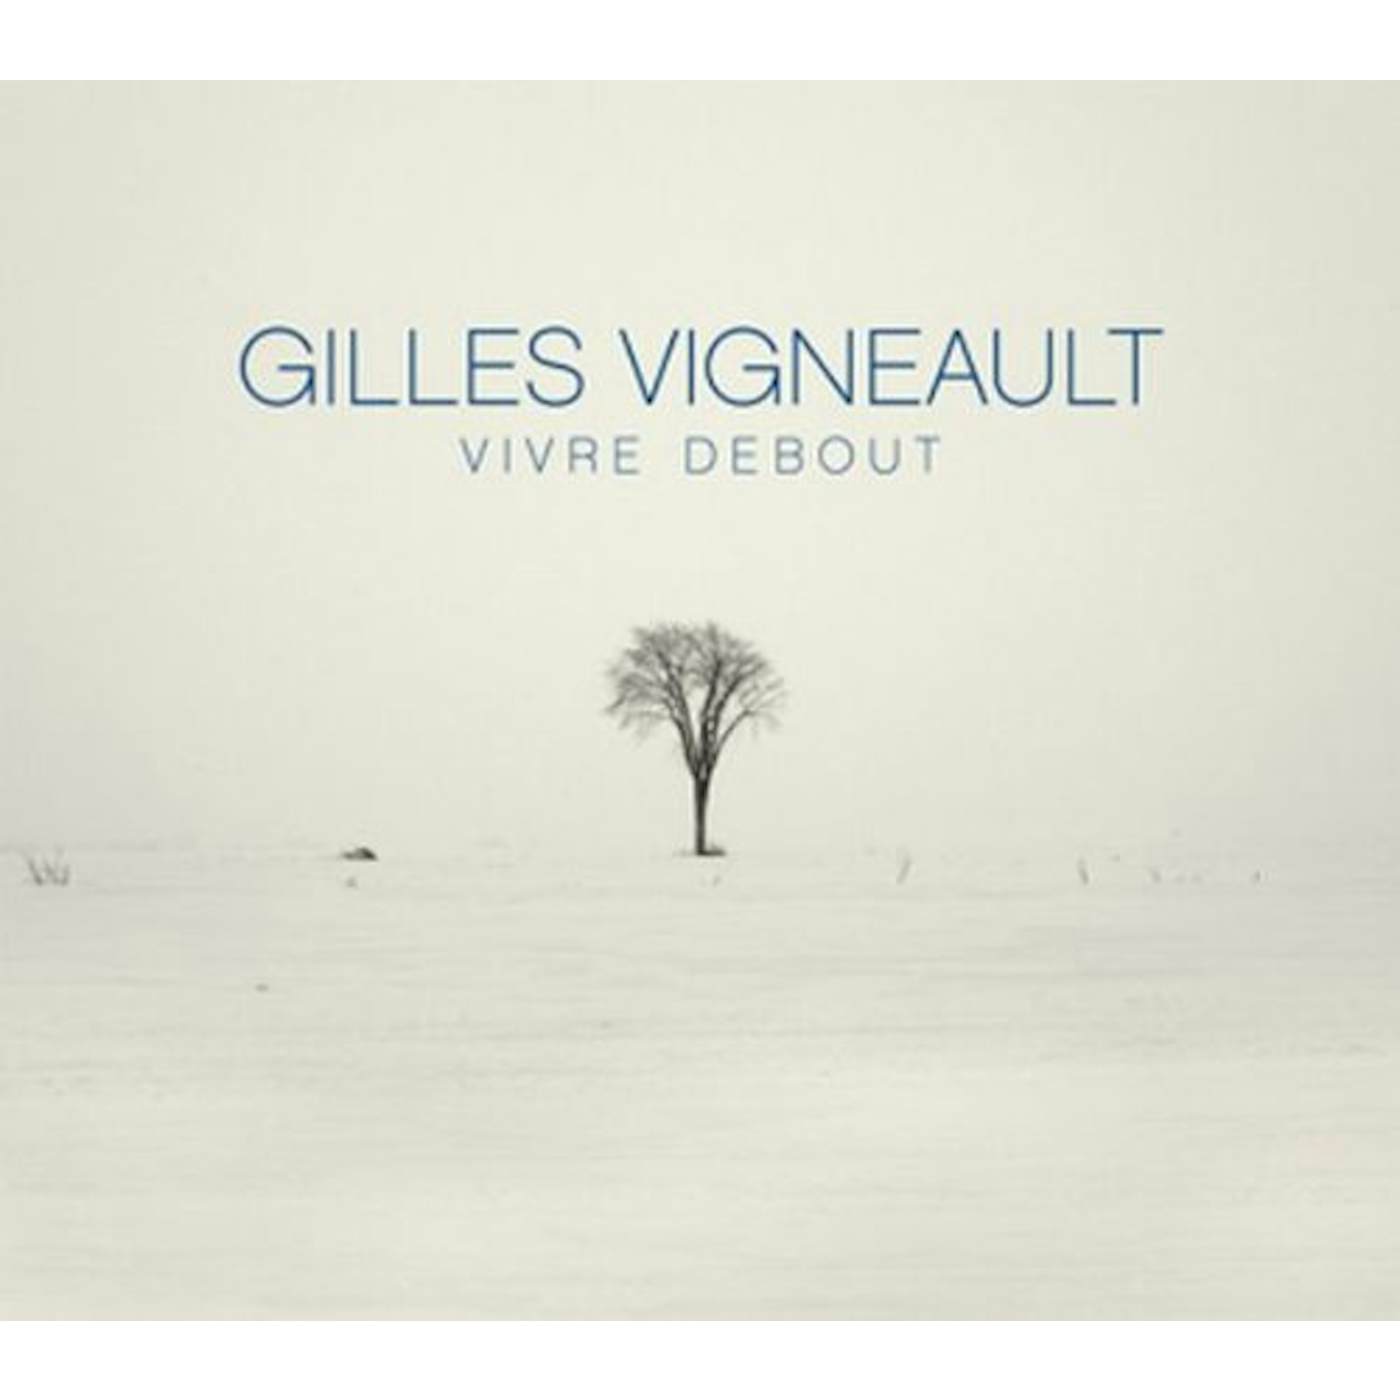 Gilles Vigneault VIVRE DEBOUT EDITION DELUXE CD